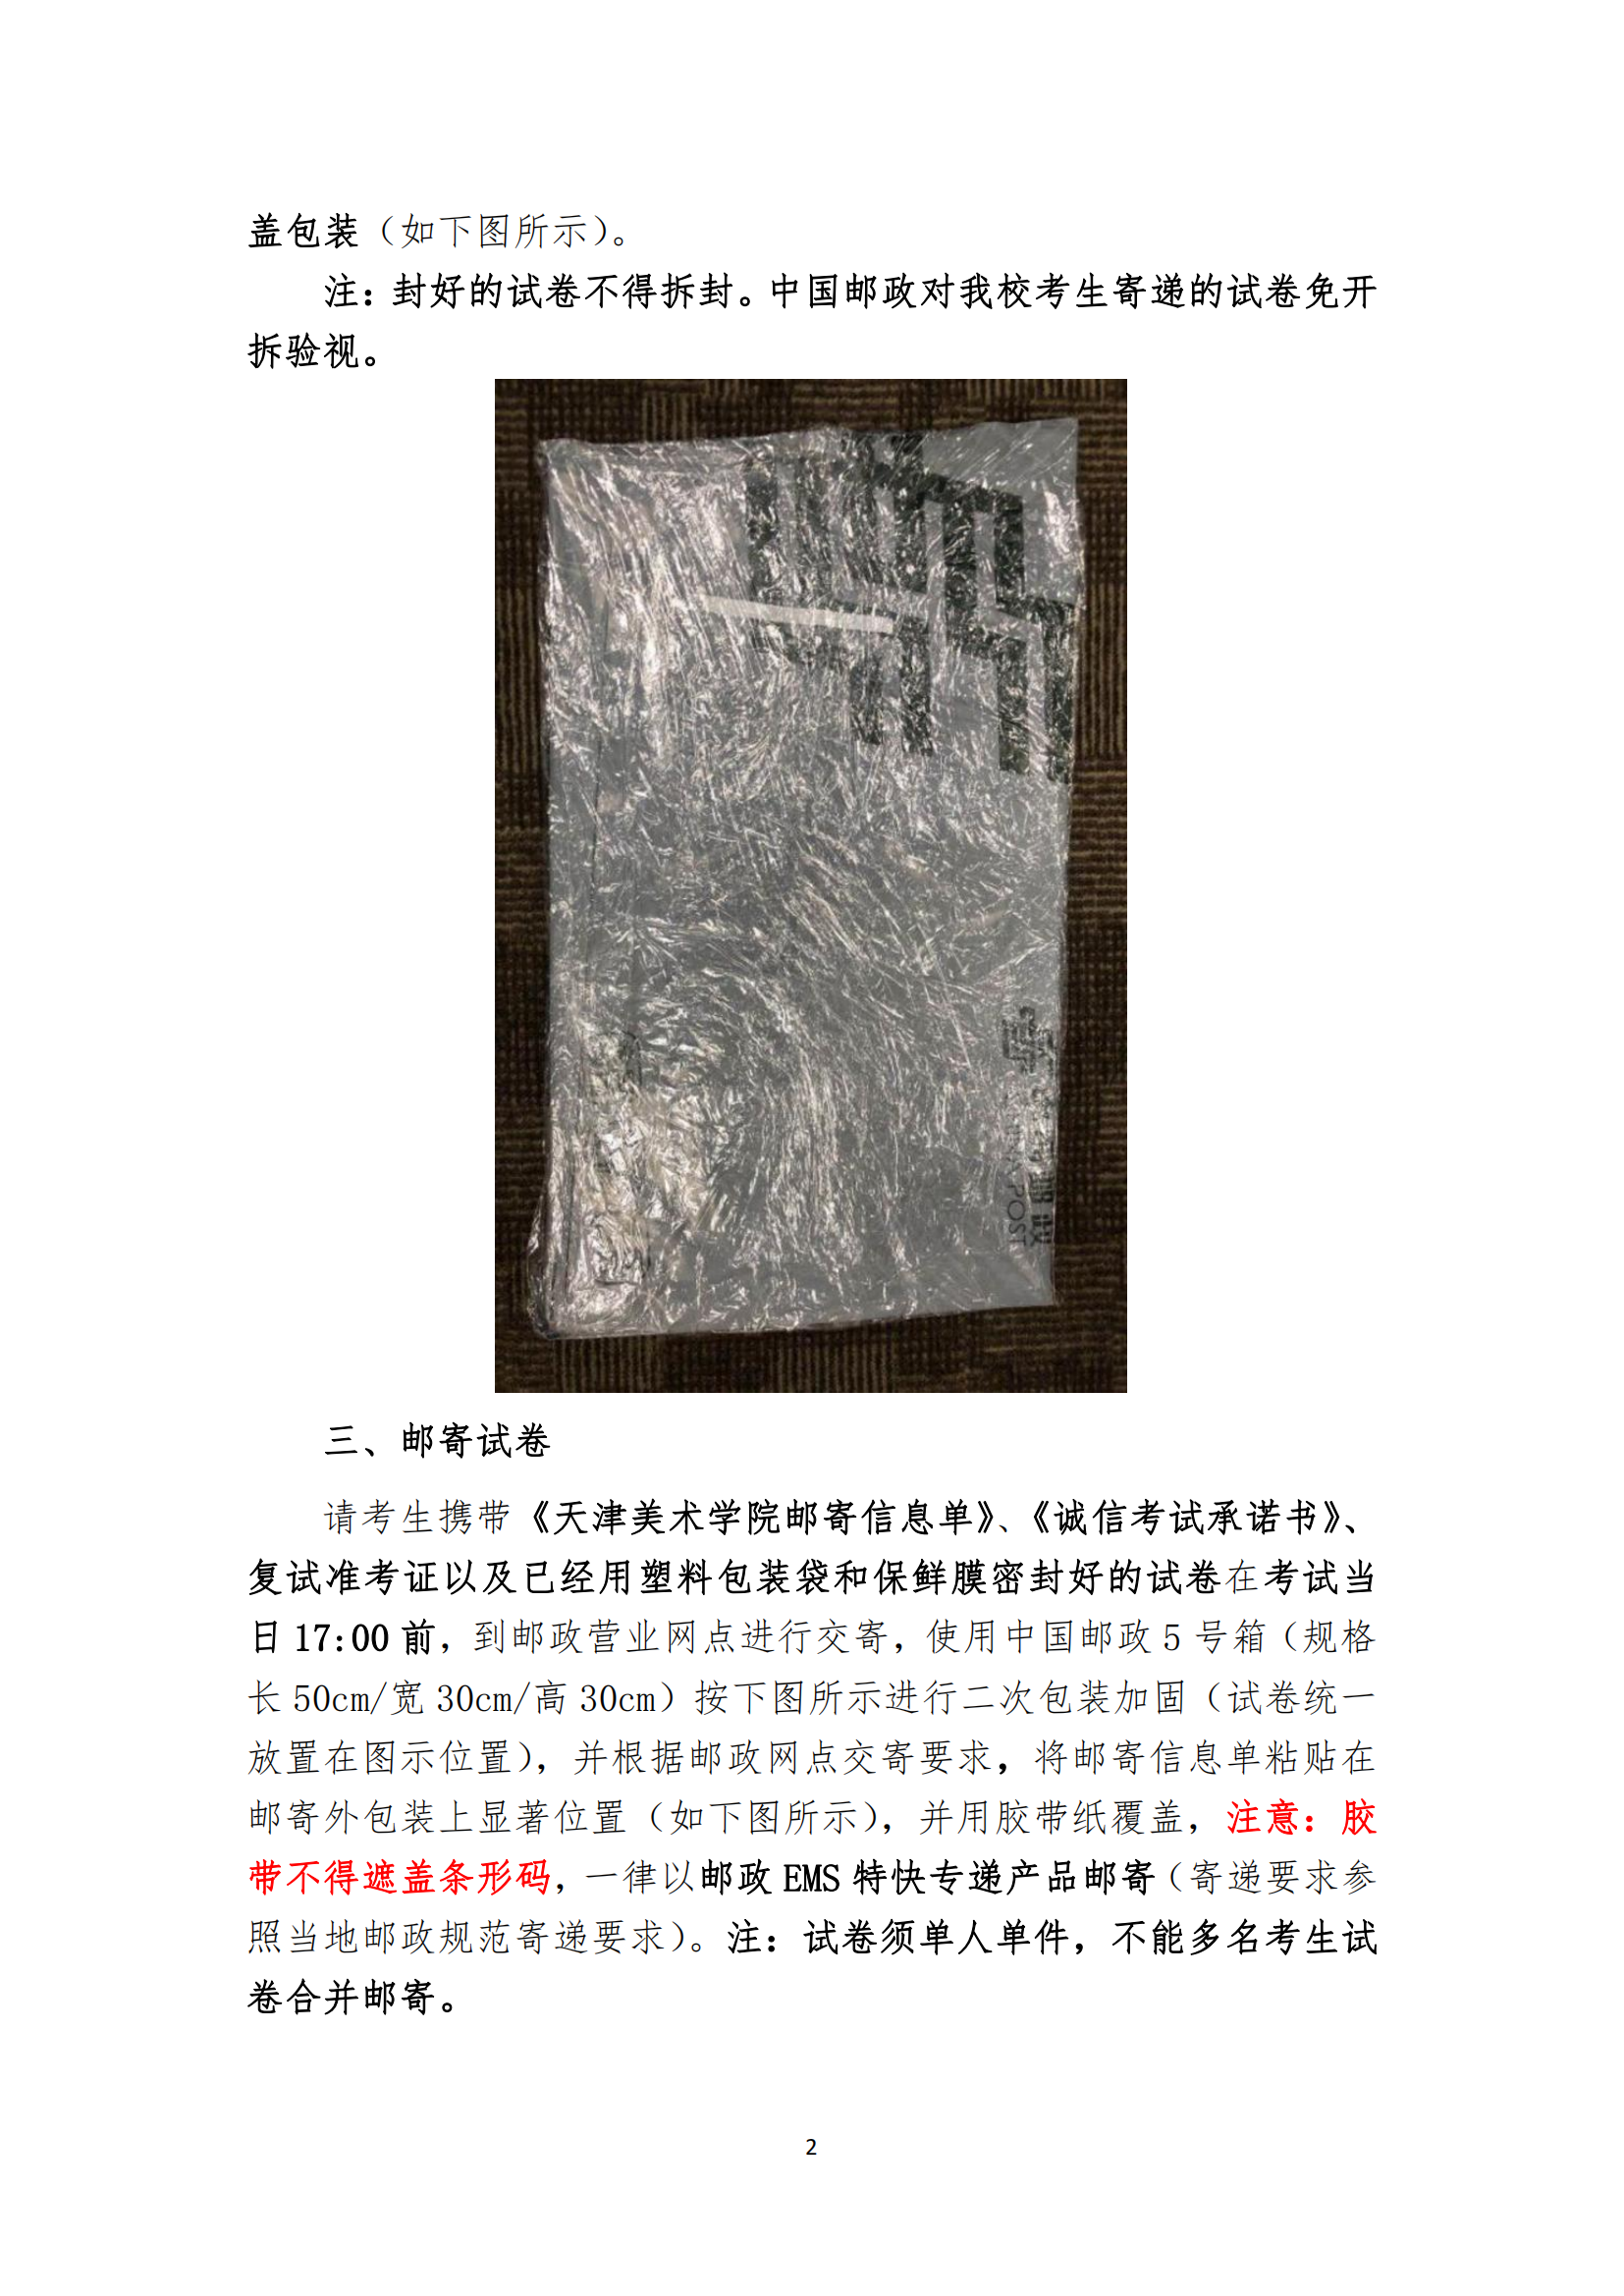 附件3：天津美术学院2022年本科招生线上复试试卷封装及邮寄要求_01.png